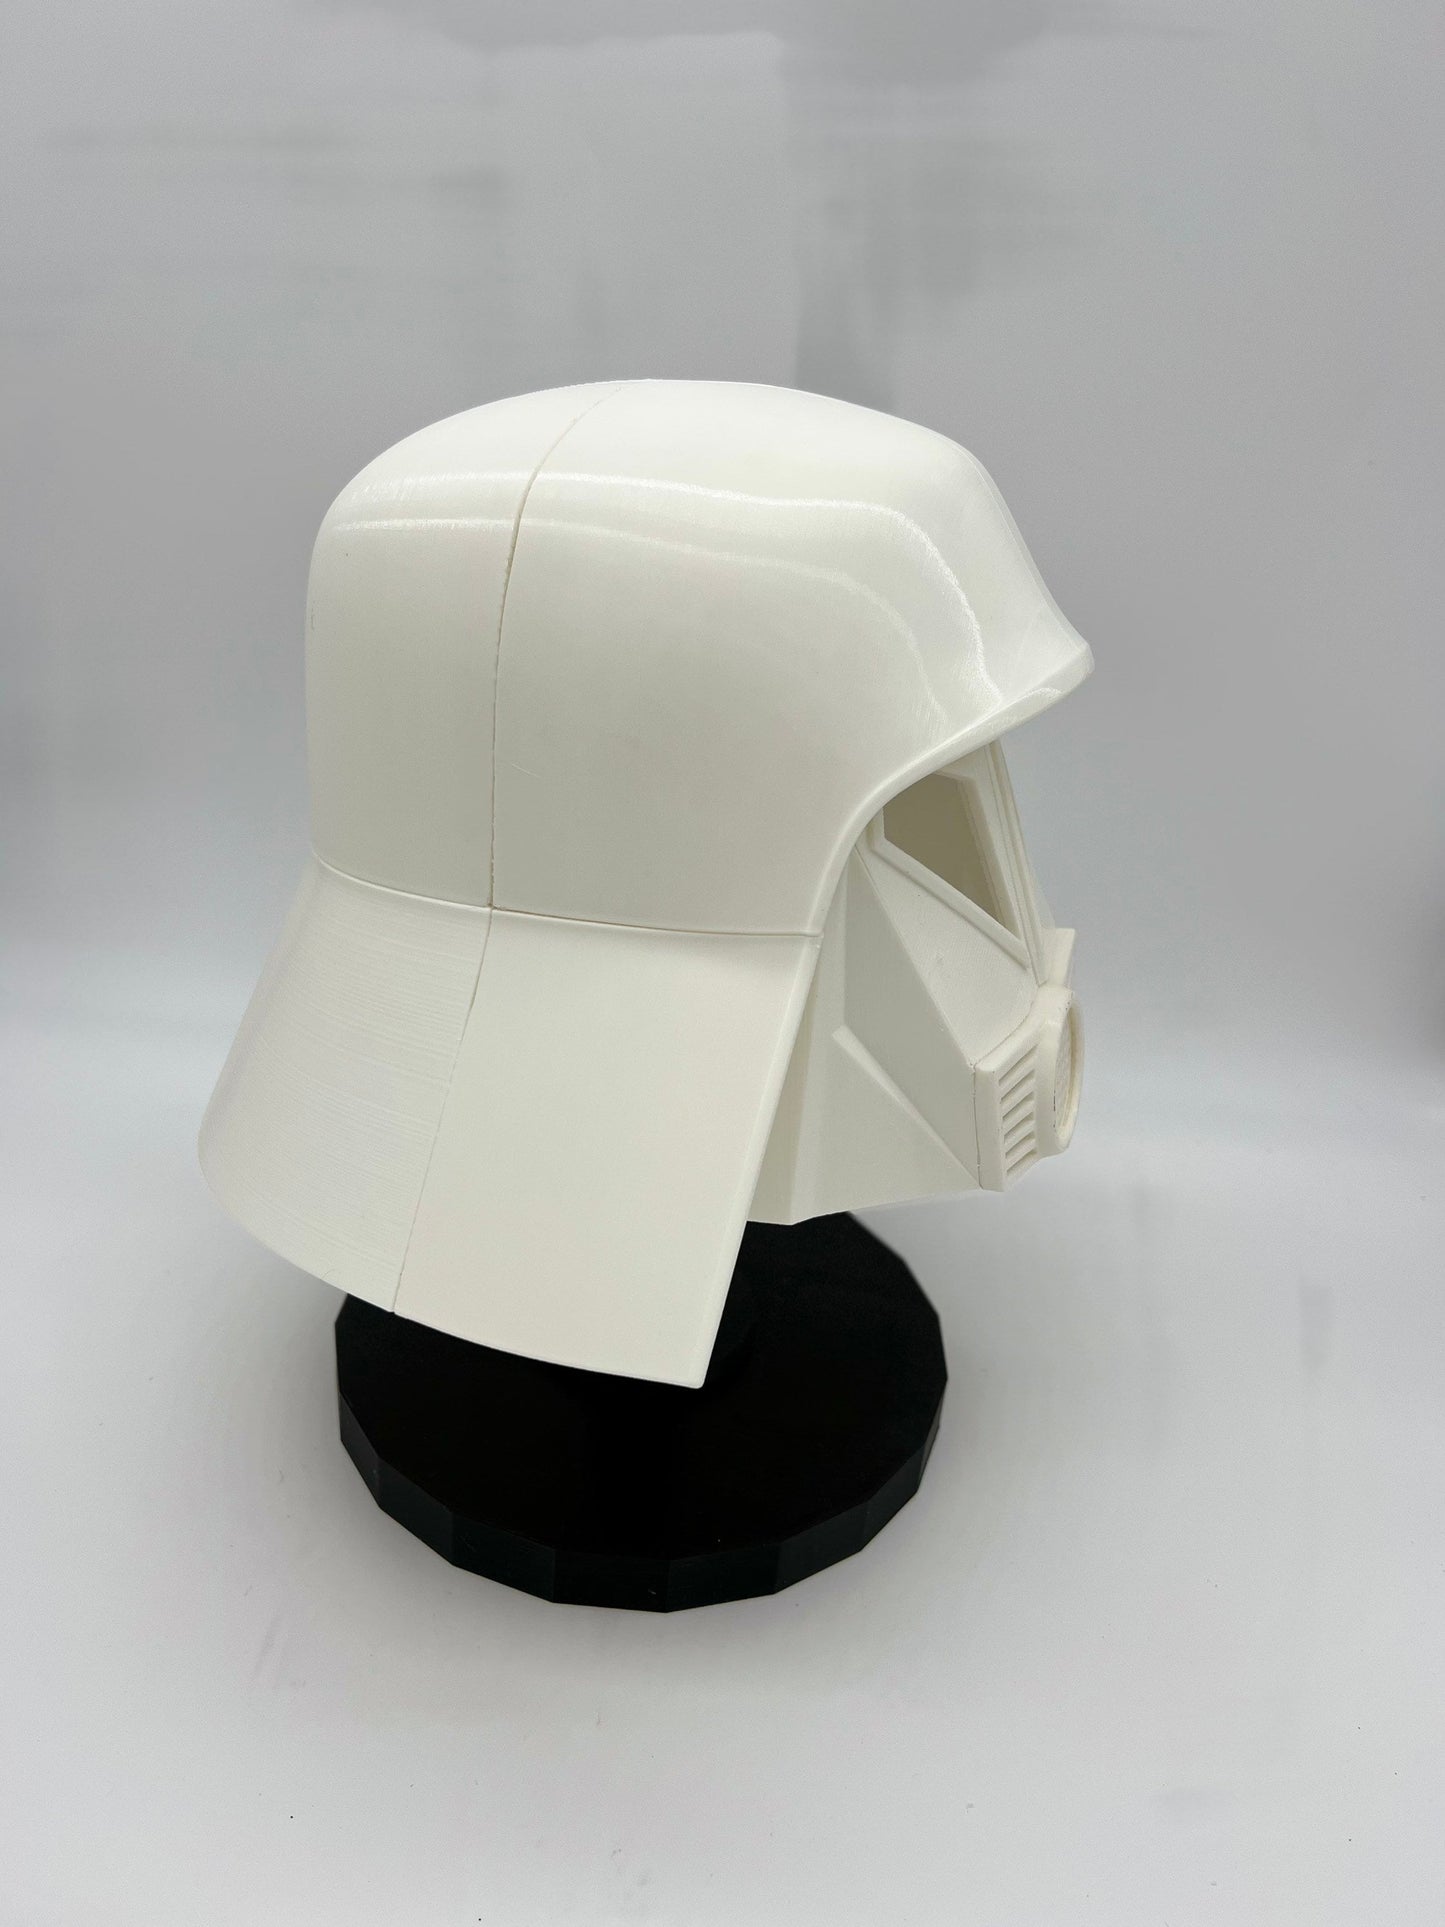 Space Balls Cosplay Helmet